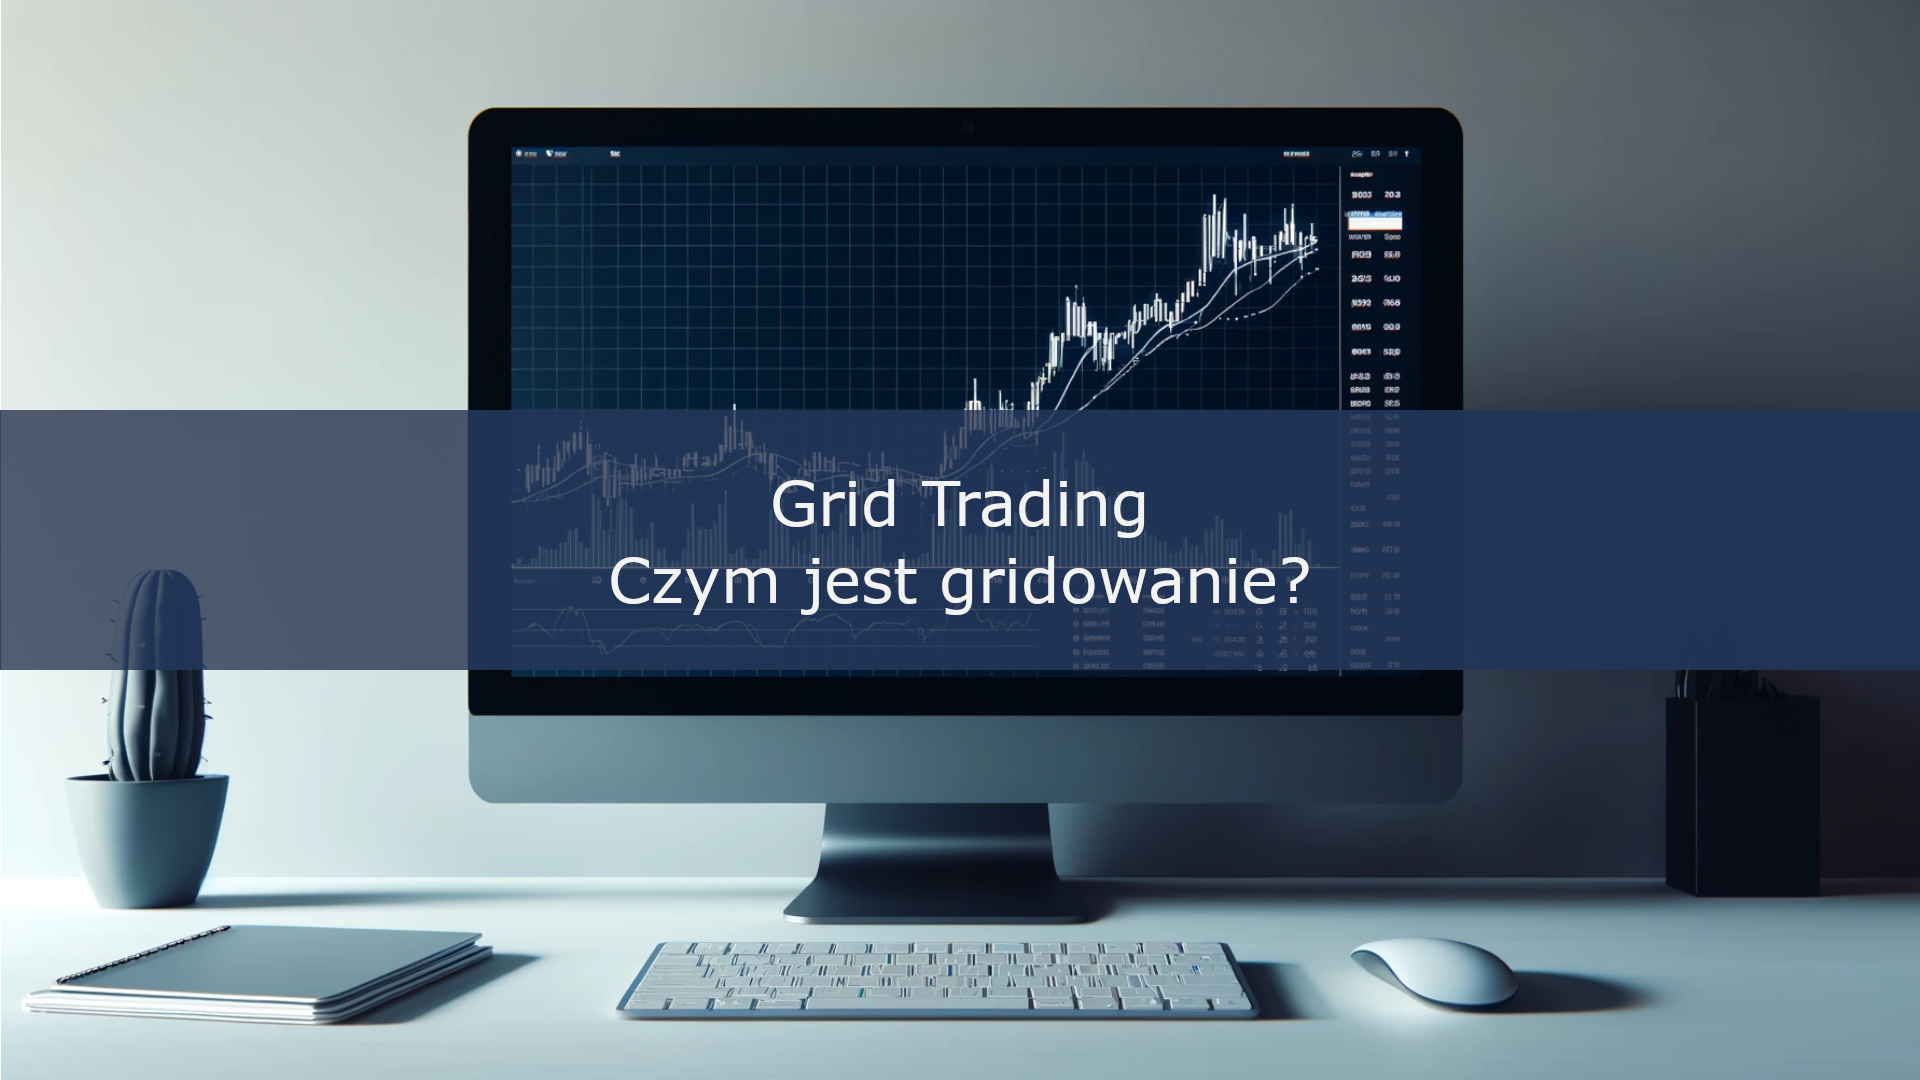 Grid Trading – czym jest gridowanie?